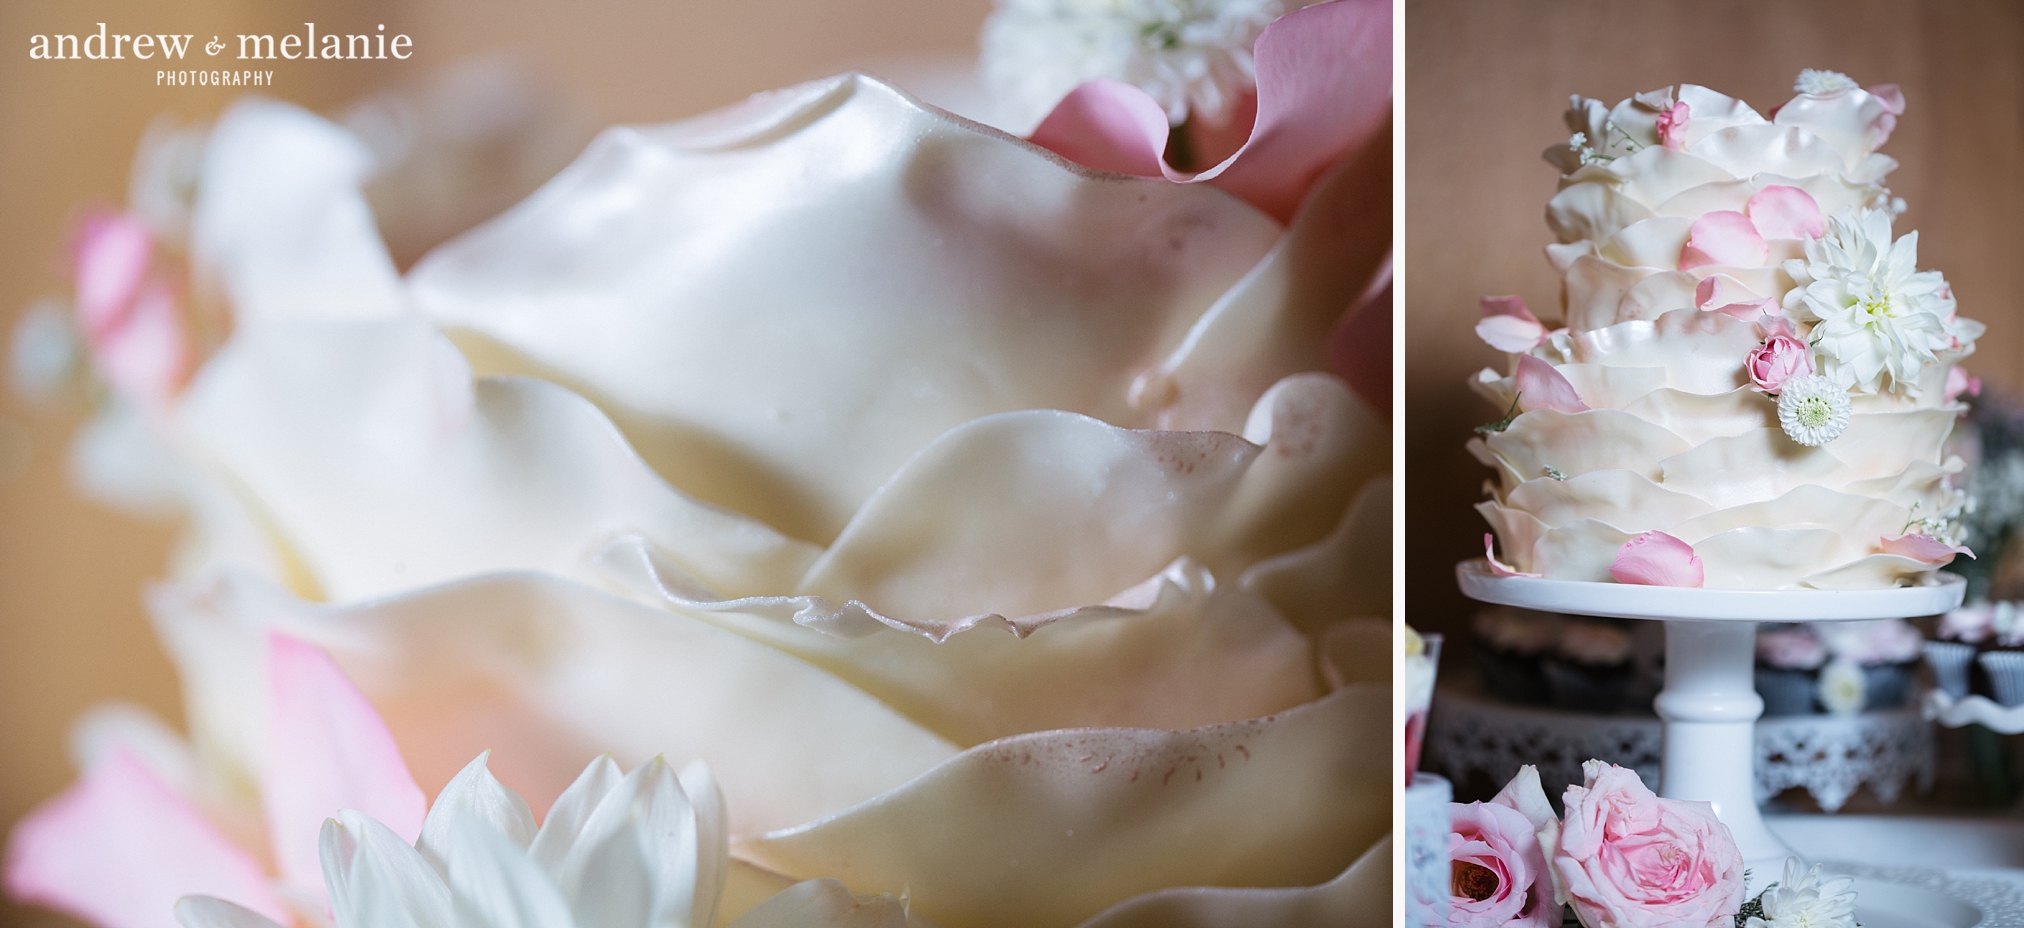 rose petal wedding cake photos blush pink